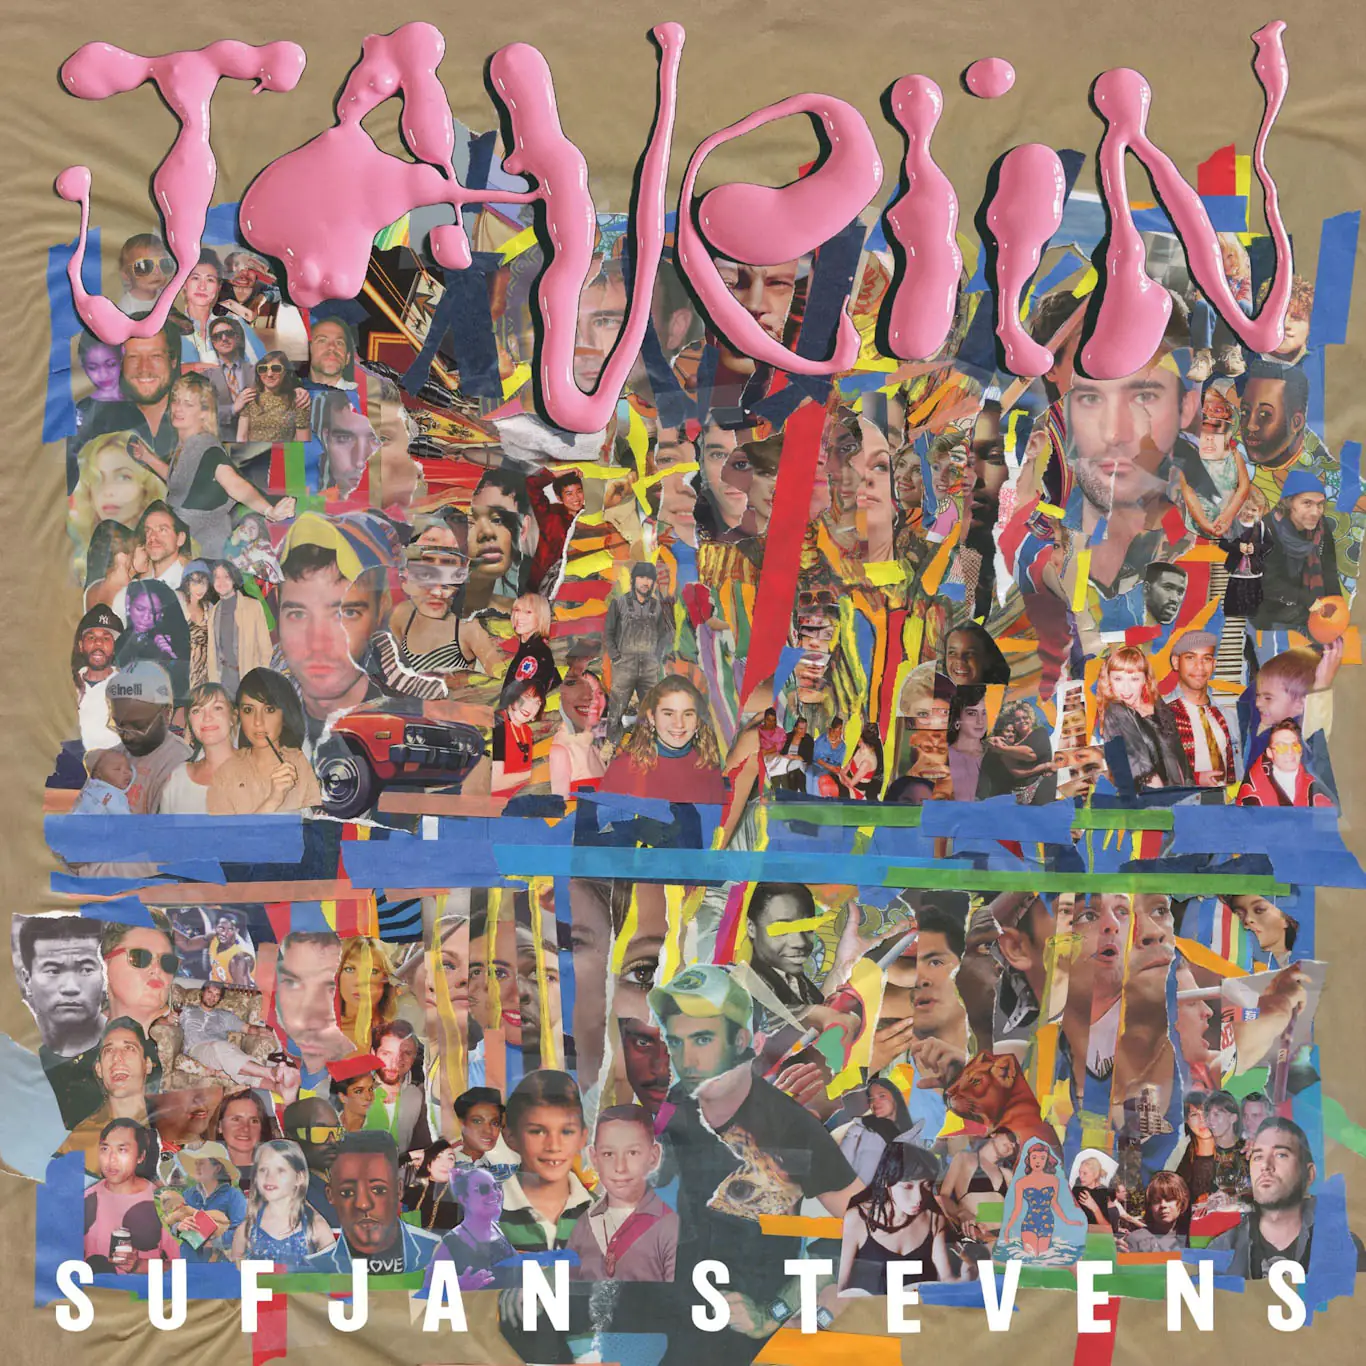 ALBUM REVIEW: Sufjan Stevens – Javelin